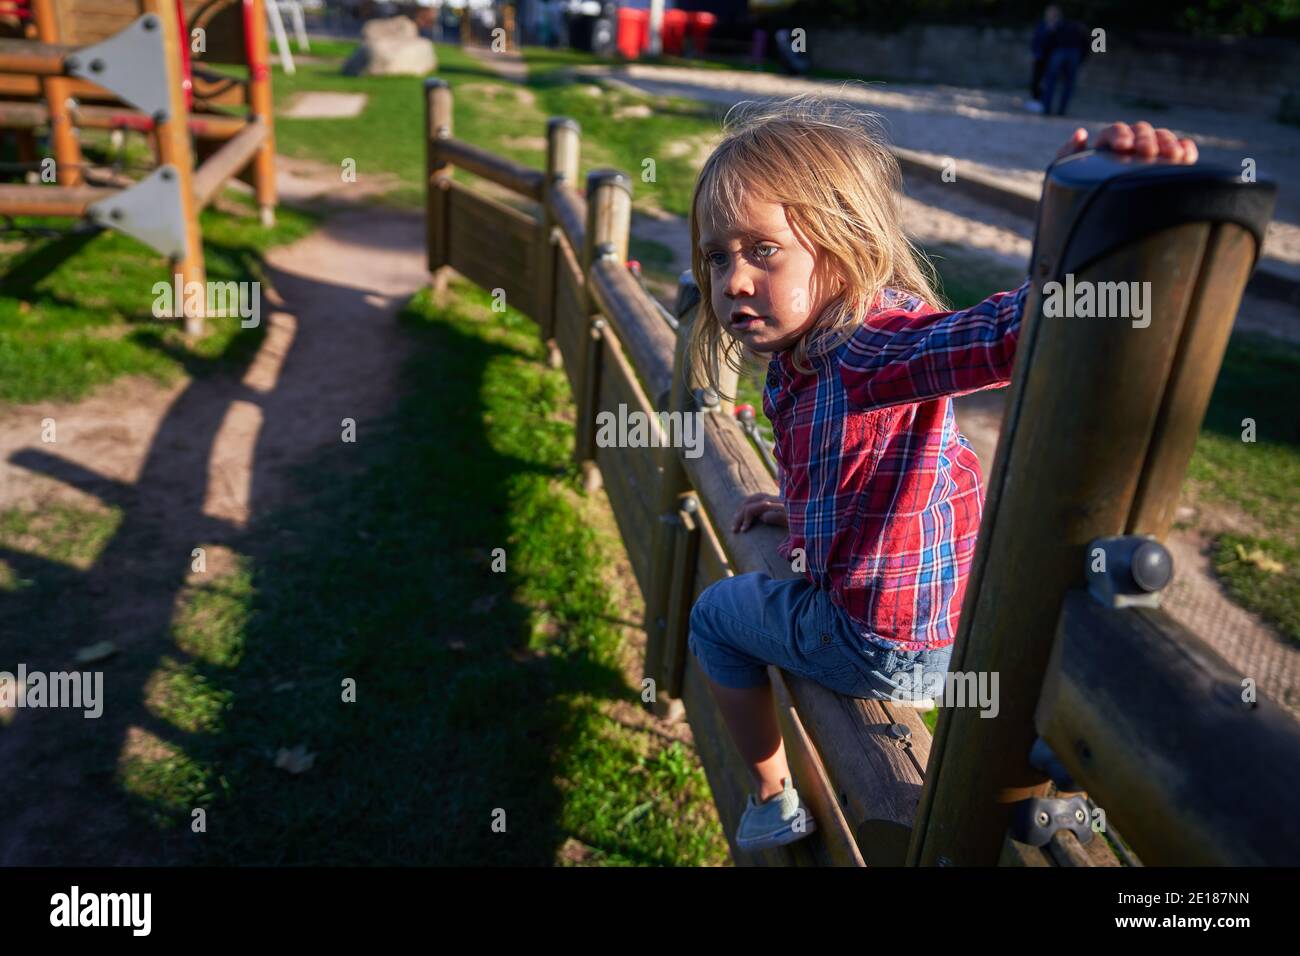 Un petit avant-chooler escalade l'équipement de terrain de jeu dans le parc un jour d'automne ensoleillé Banque D'Images